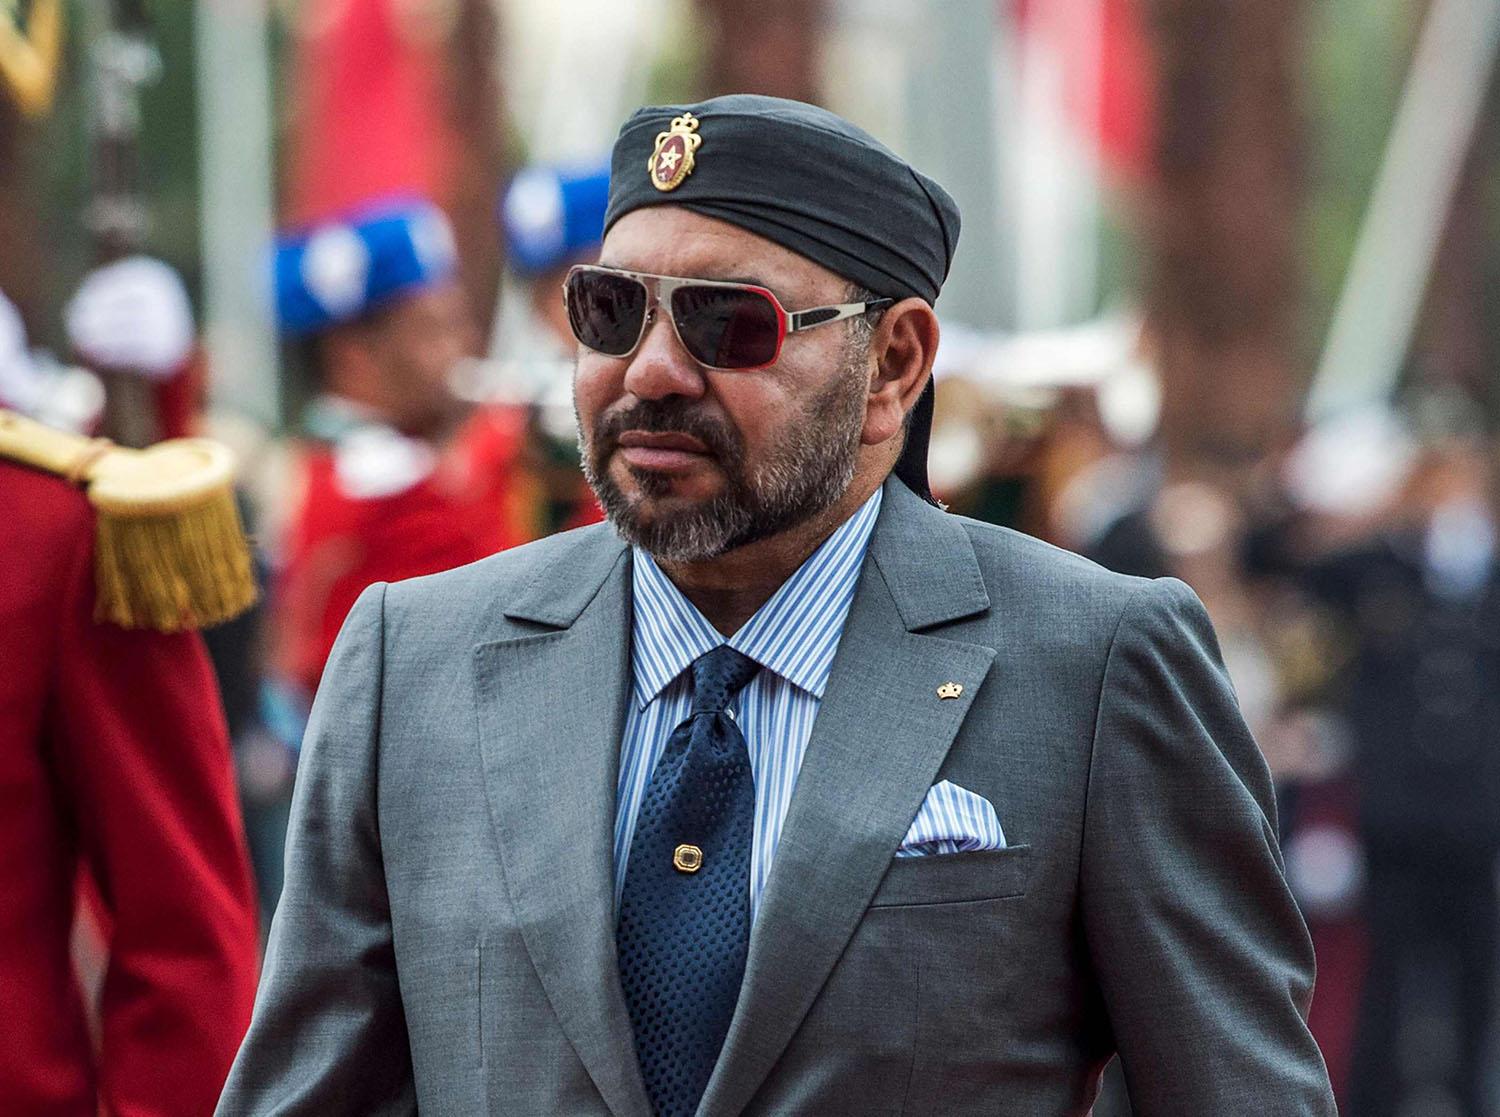 ملك المغرب محمد السادس